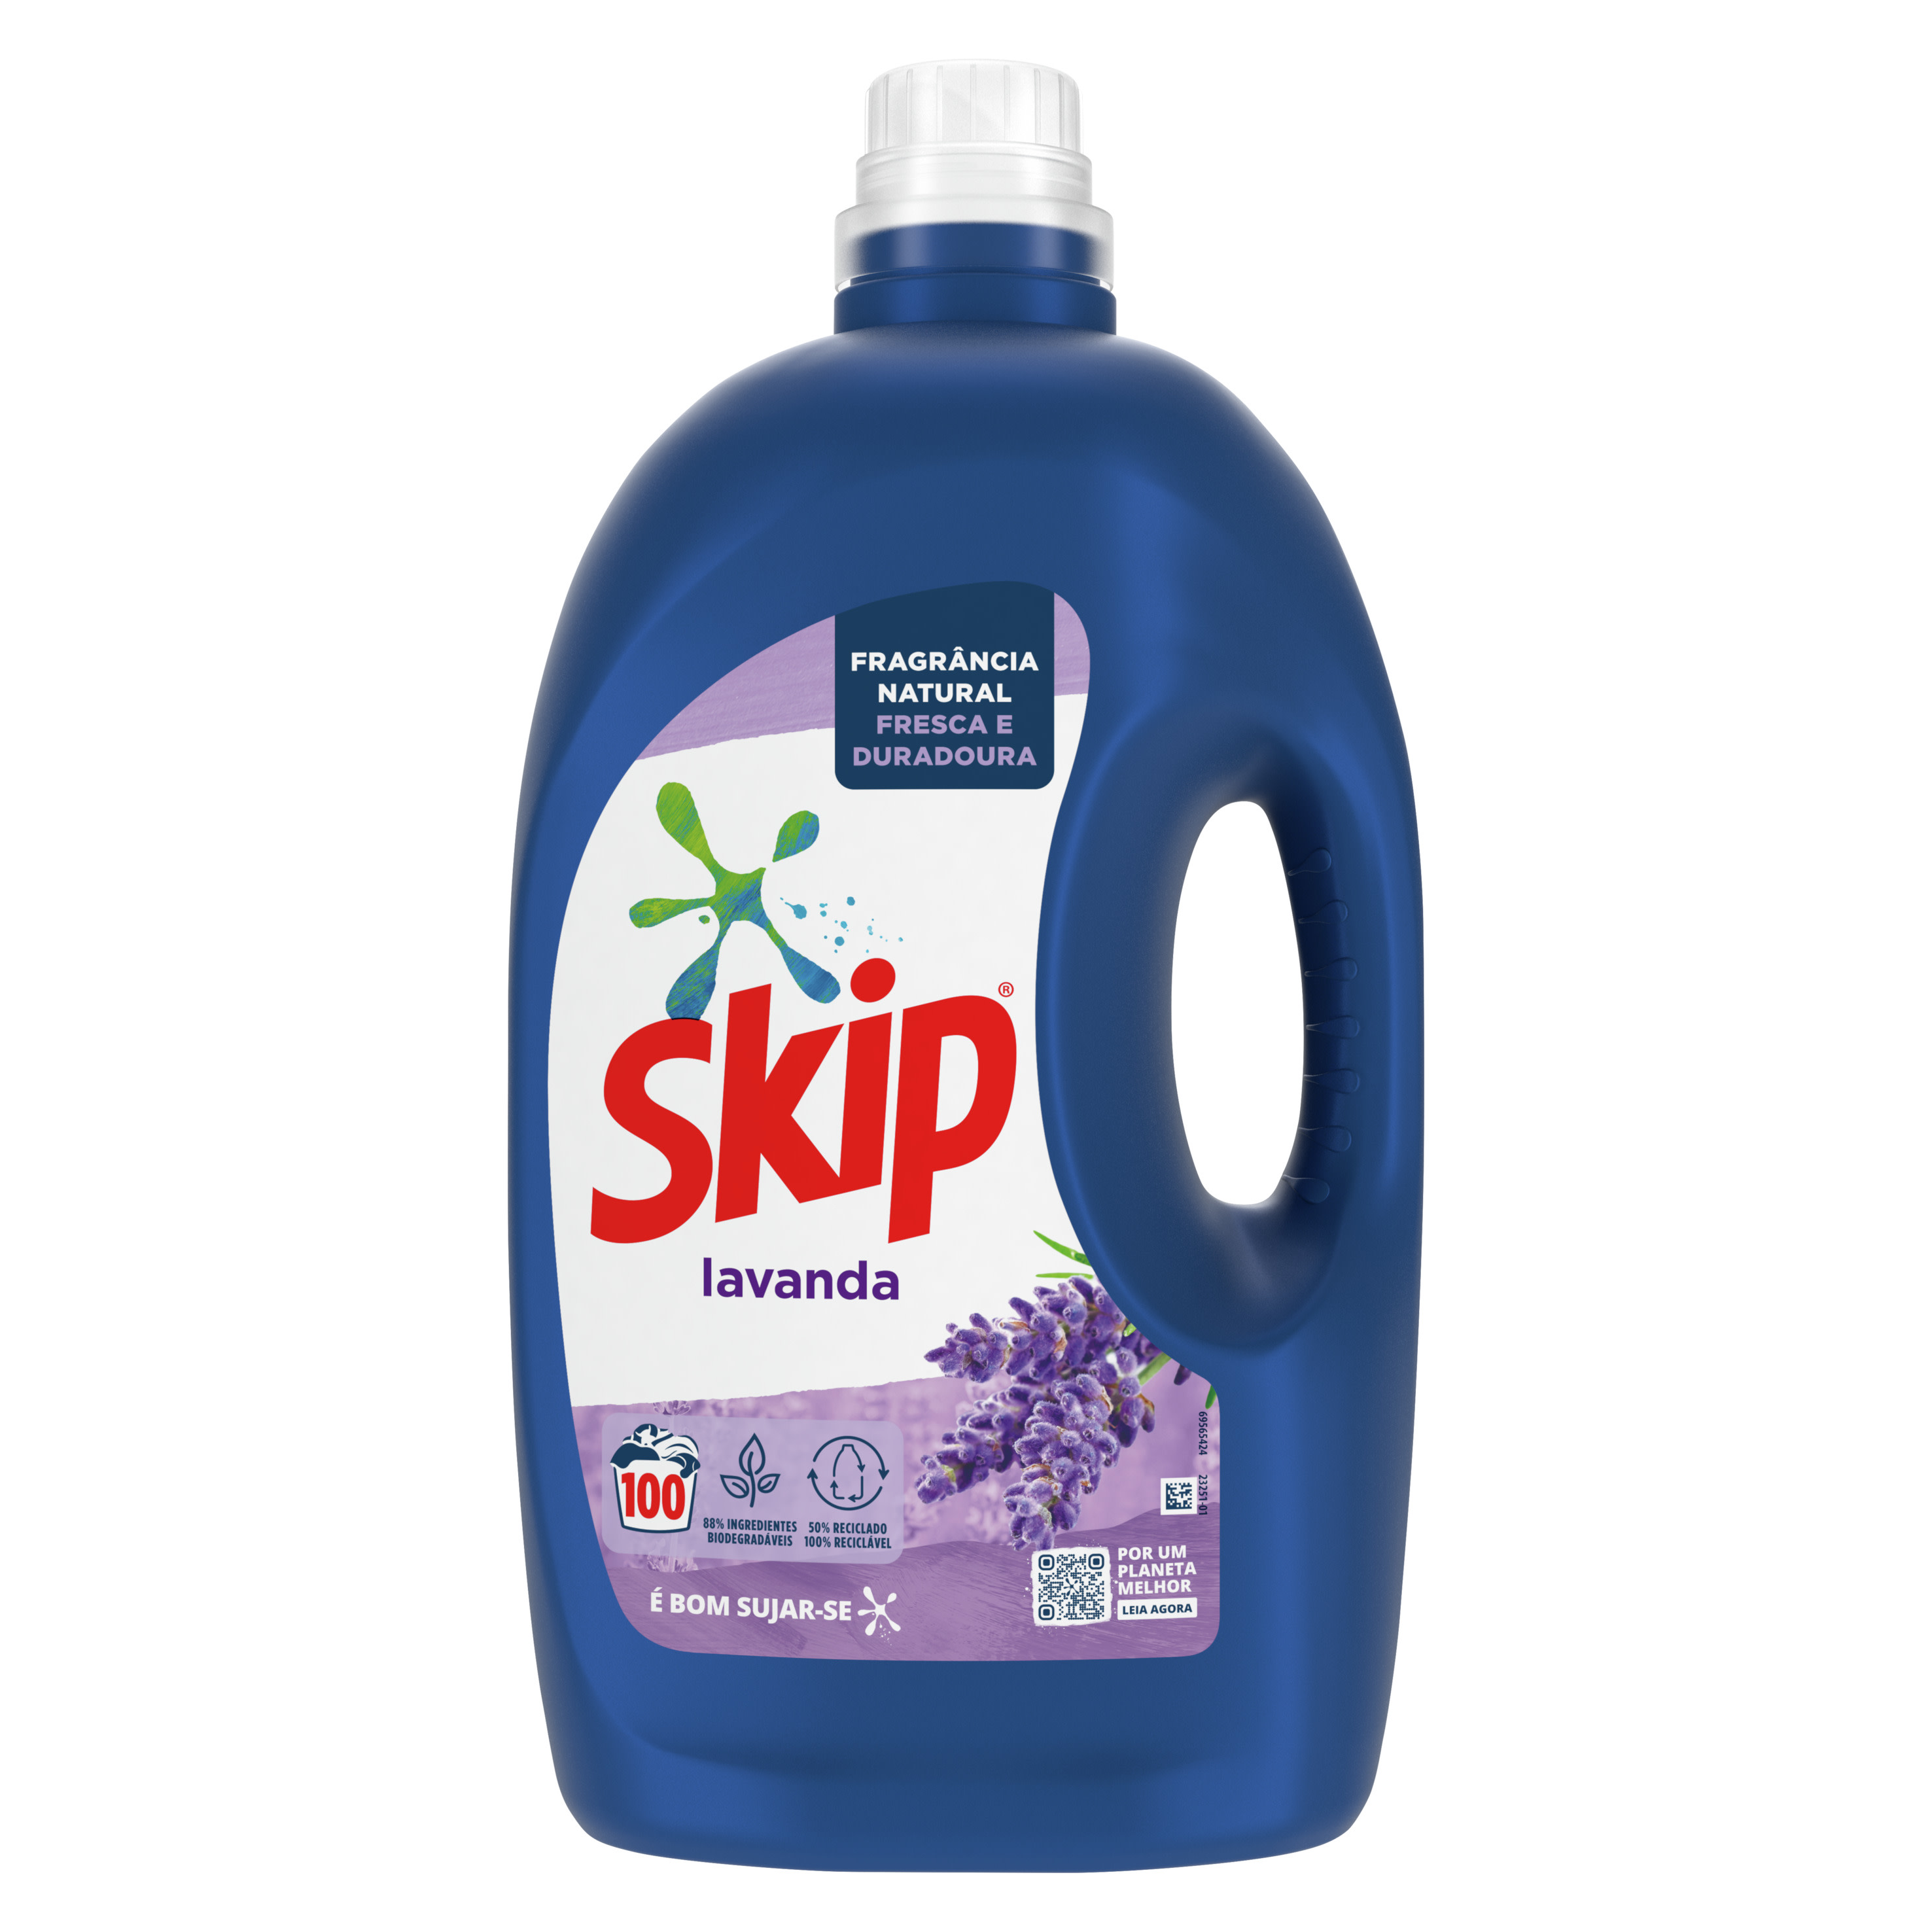 SKIP Detergente Líquido Lavanda packshot